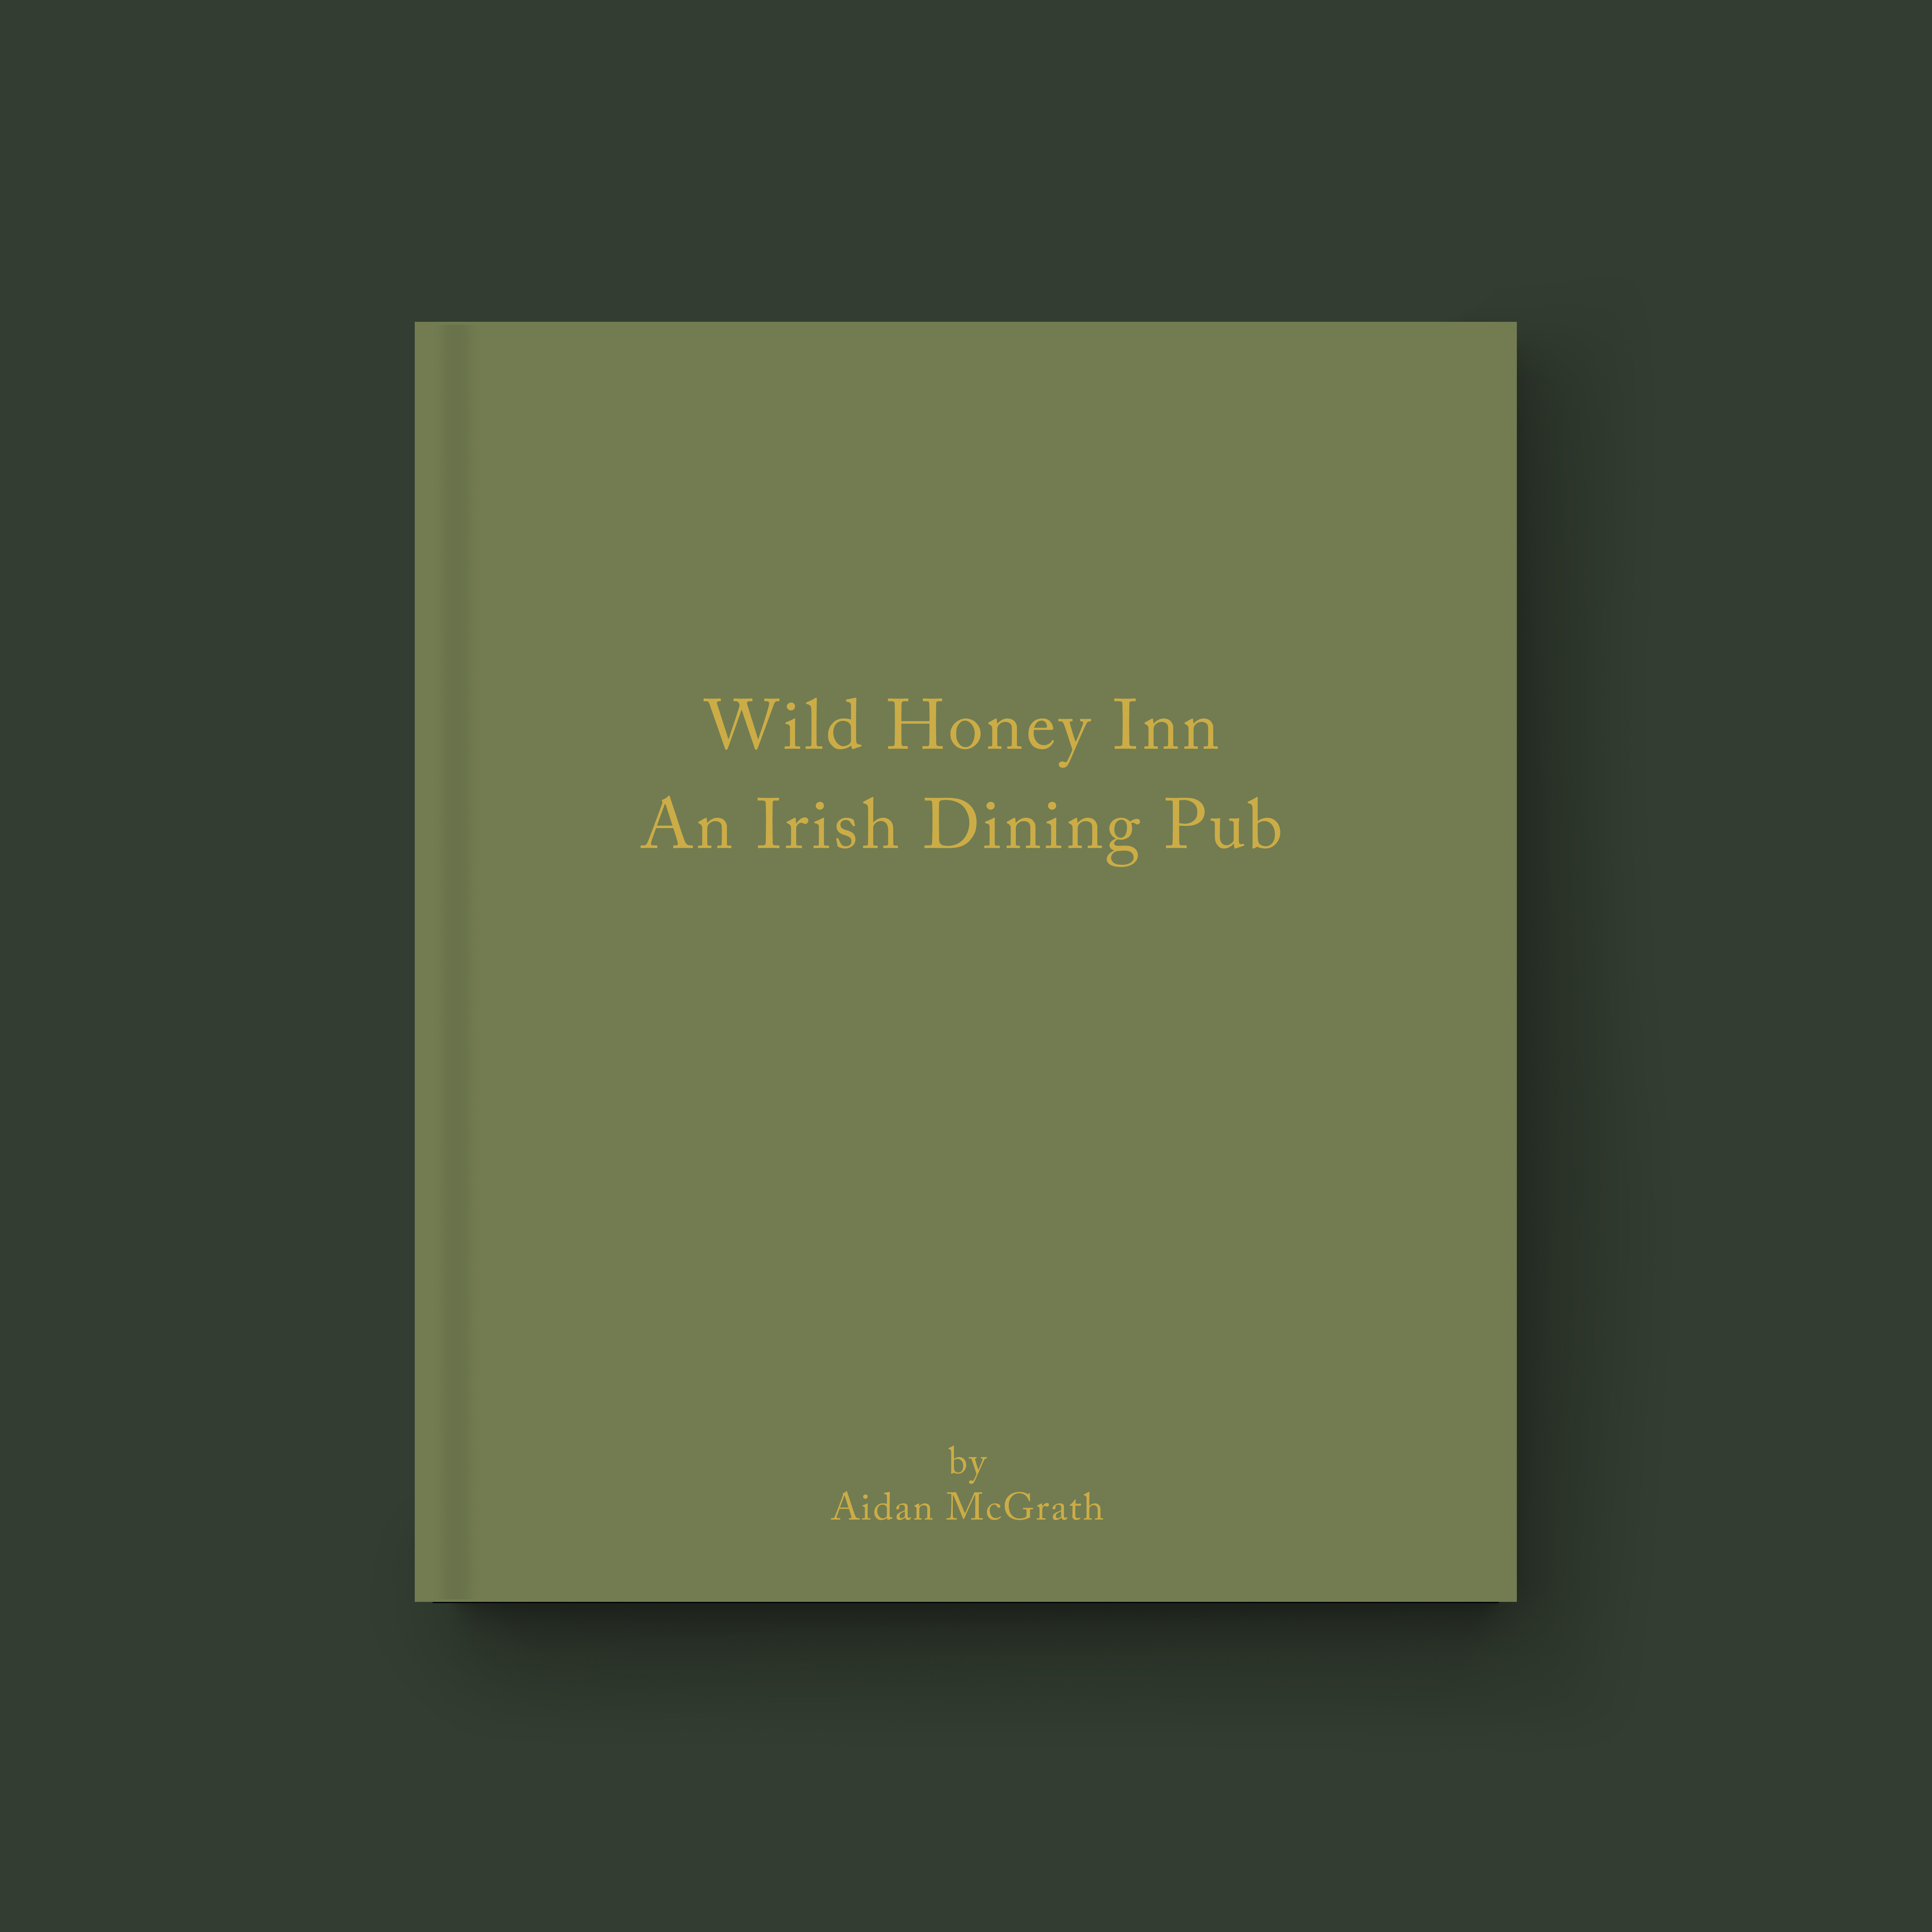 Wild Honey Inn by Aidan McGrath